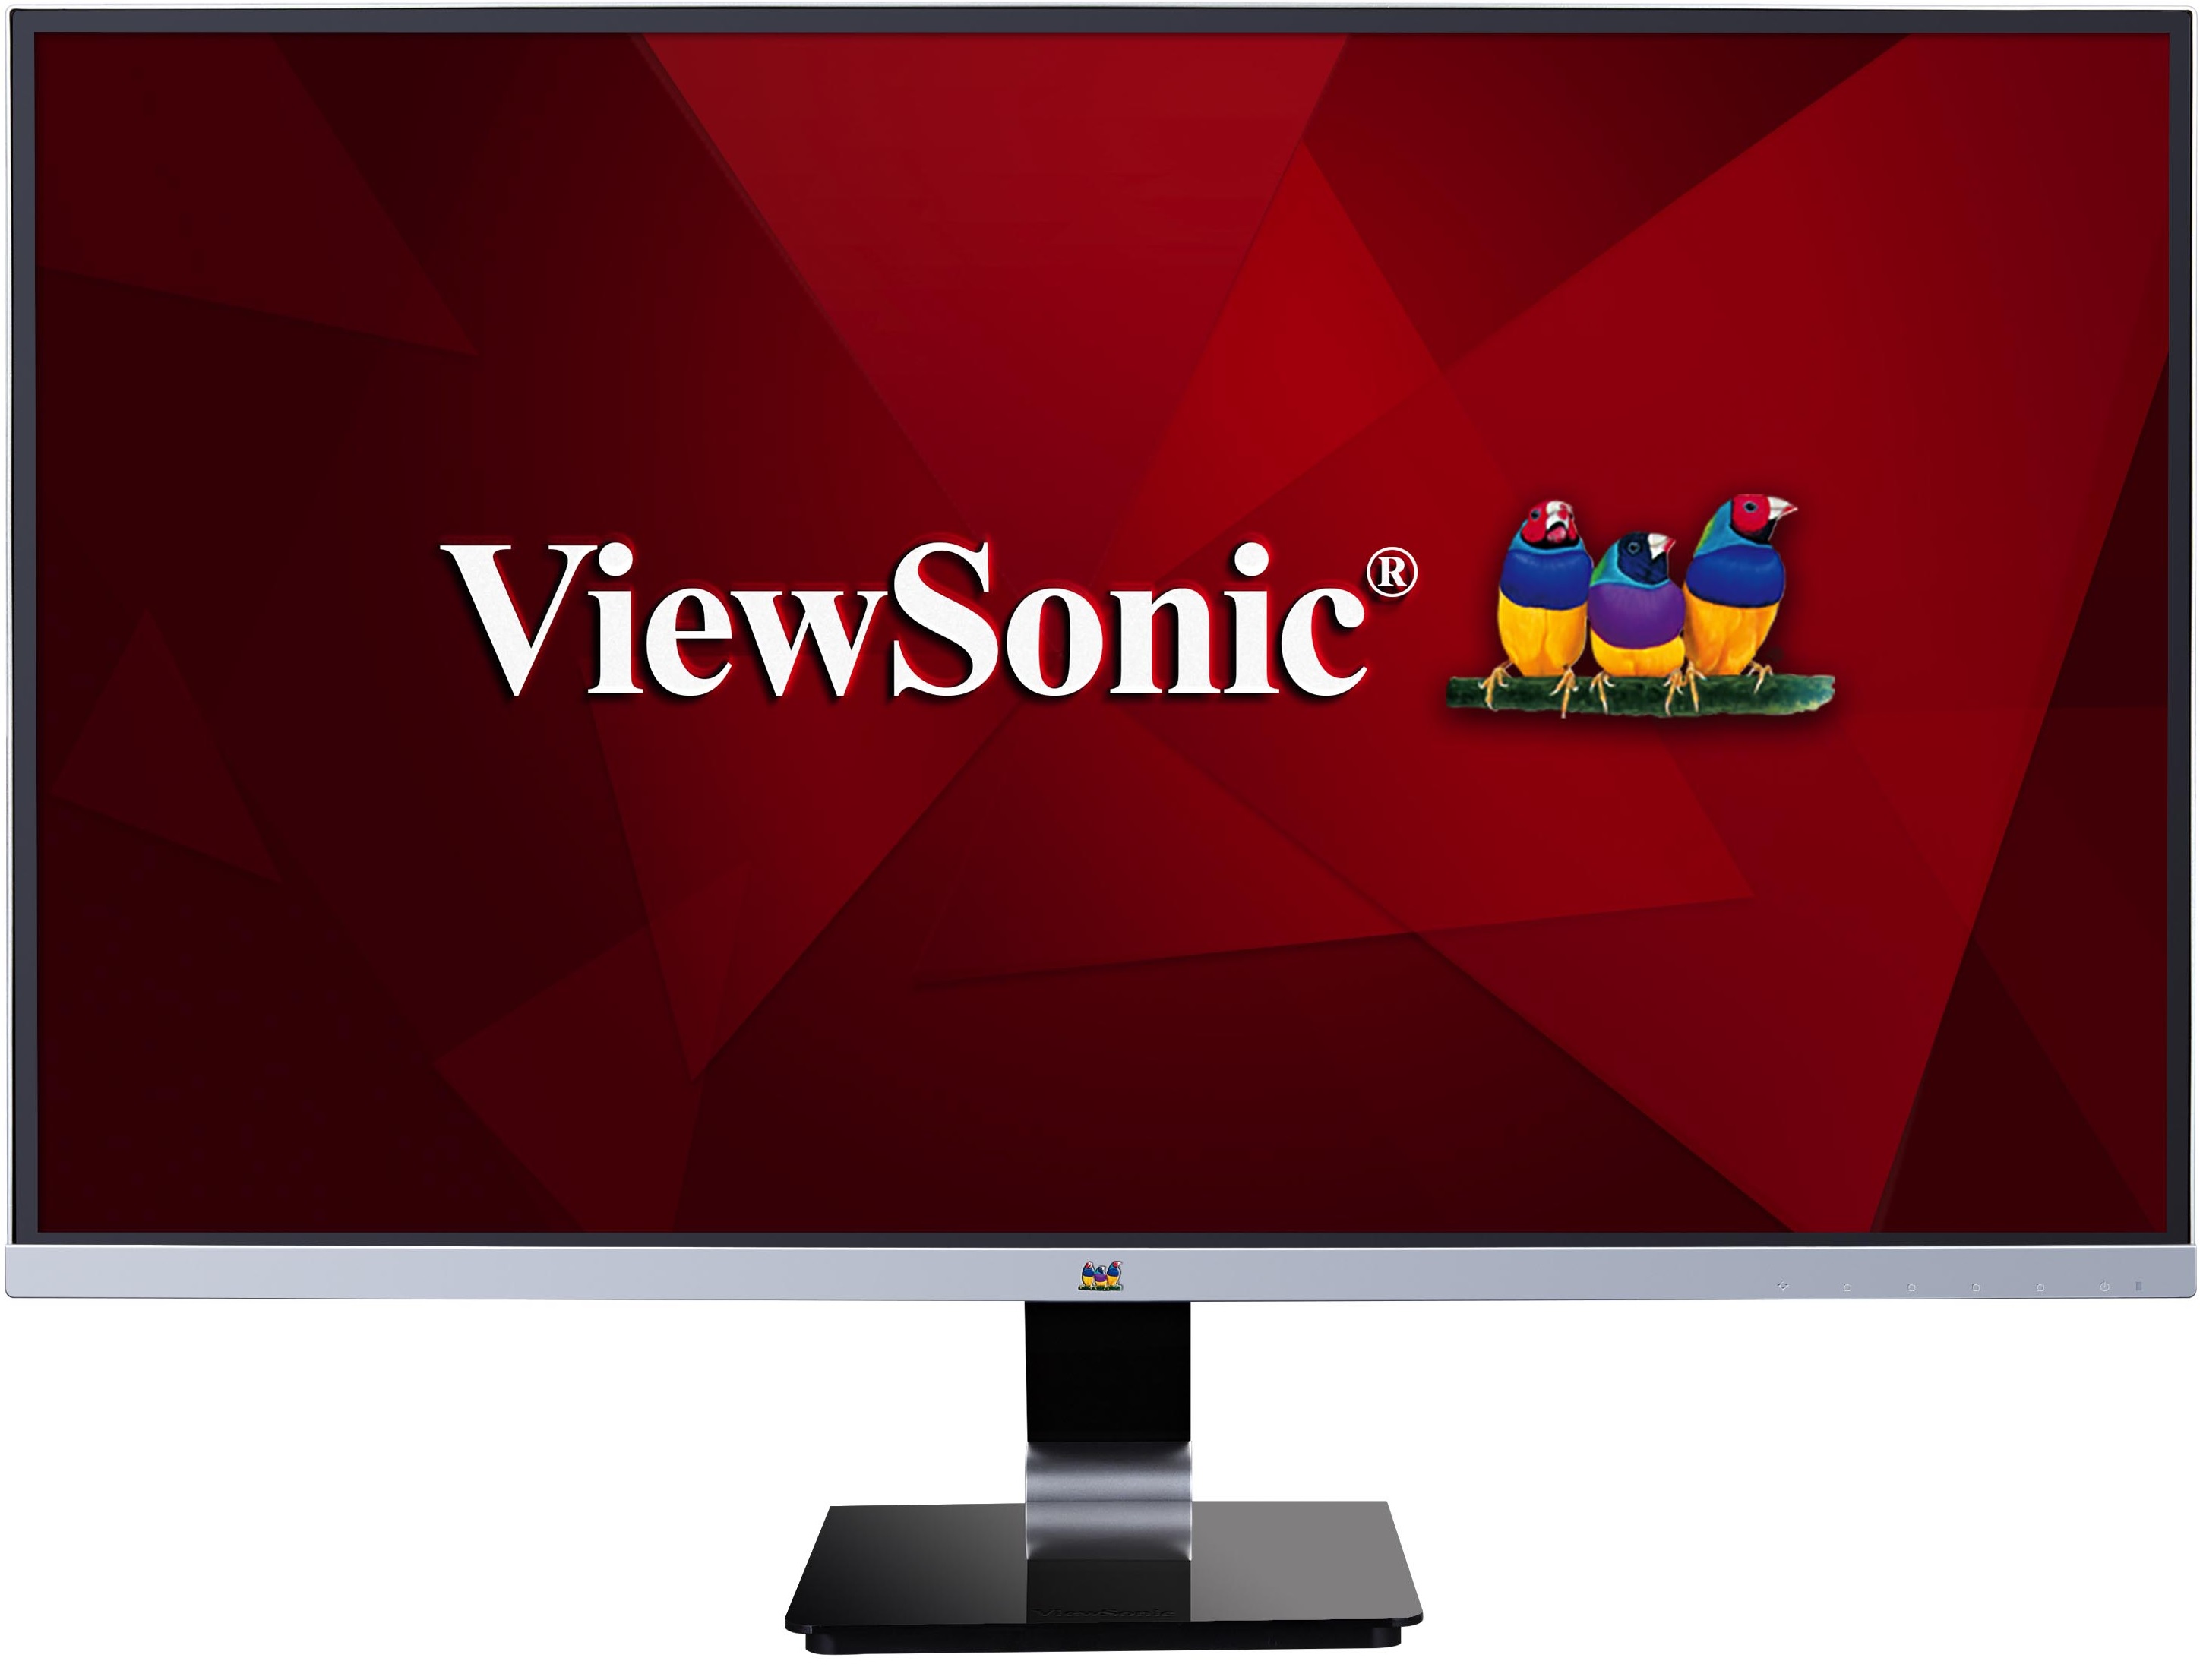 Monitor WQHD 27'' | ViewSonic VX2778-smhd | Área Visible 27'', Panel IPS, Resolución 2560x1440, Contraste Estático 1000:1, Contraste Dinámico 80M:1, Fuente de Luz LED, Brillo 350cd/m2, 16.7M Colores, Puertos (HDMI, DisplayPort, Mini-DisplayPort)